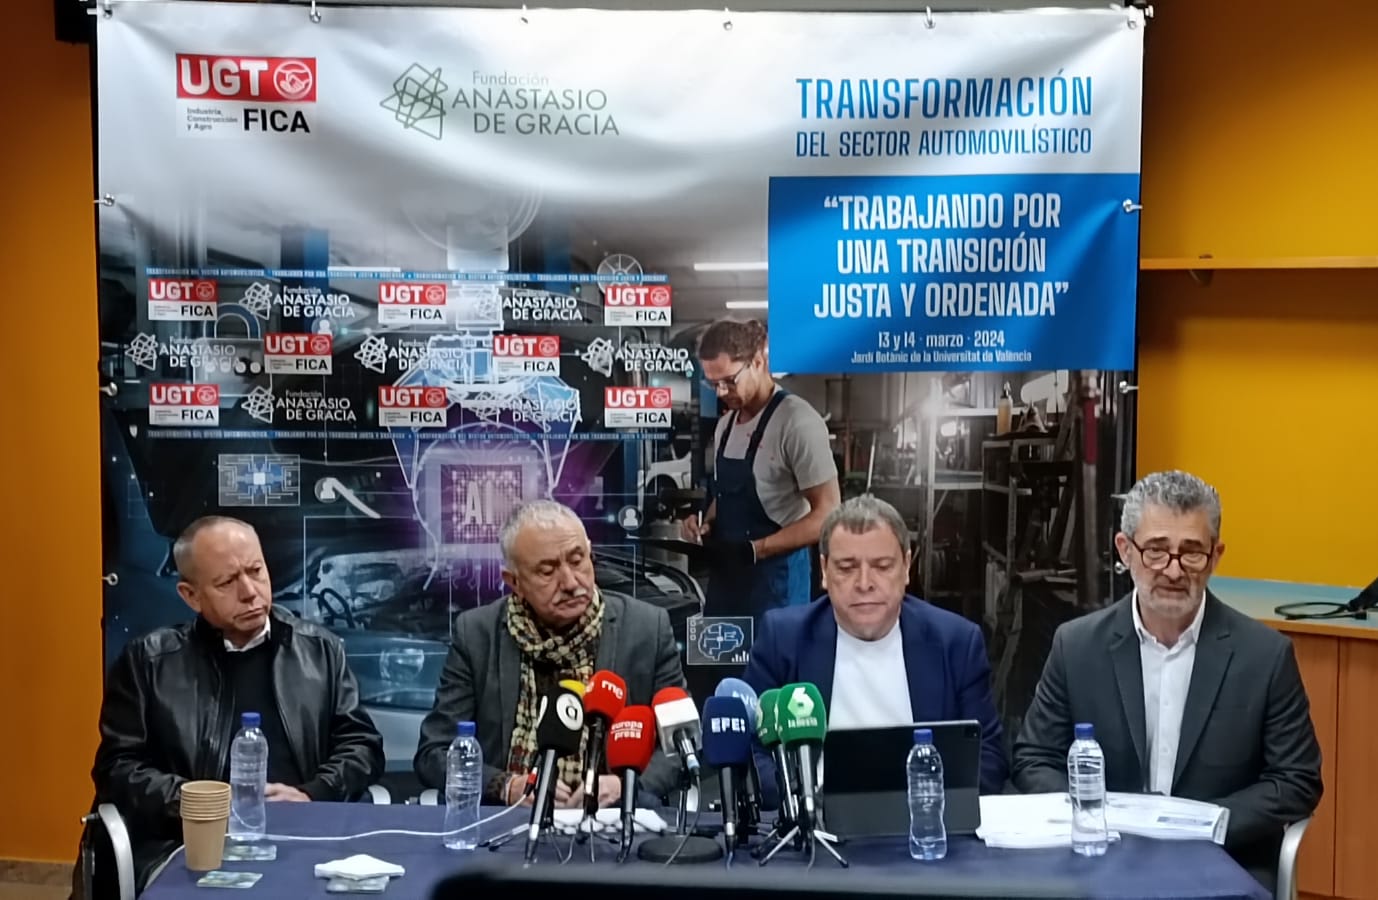 Mariano Hoya y Jordi Hereu clausuran mañana en Valencia las jornadas sobre “La Transformación del Sector Automovilístico"